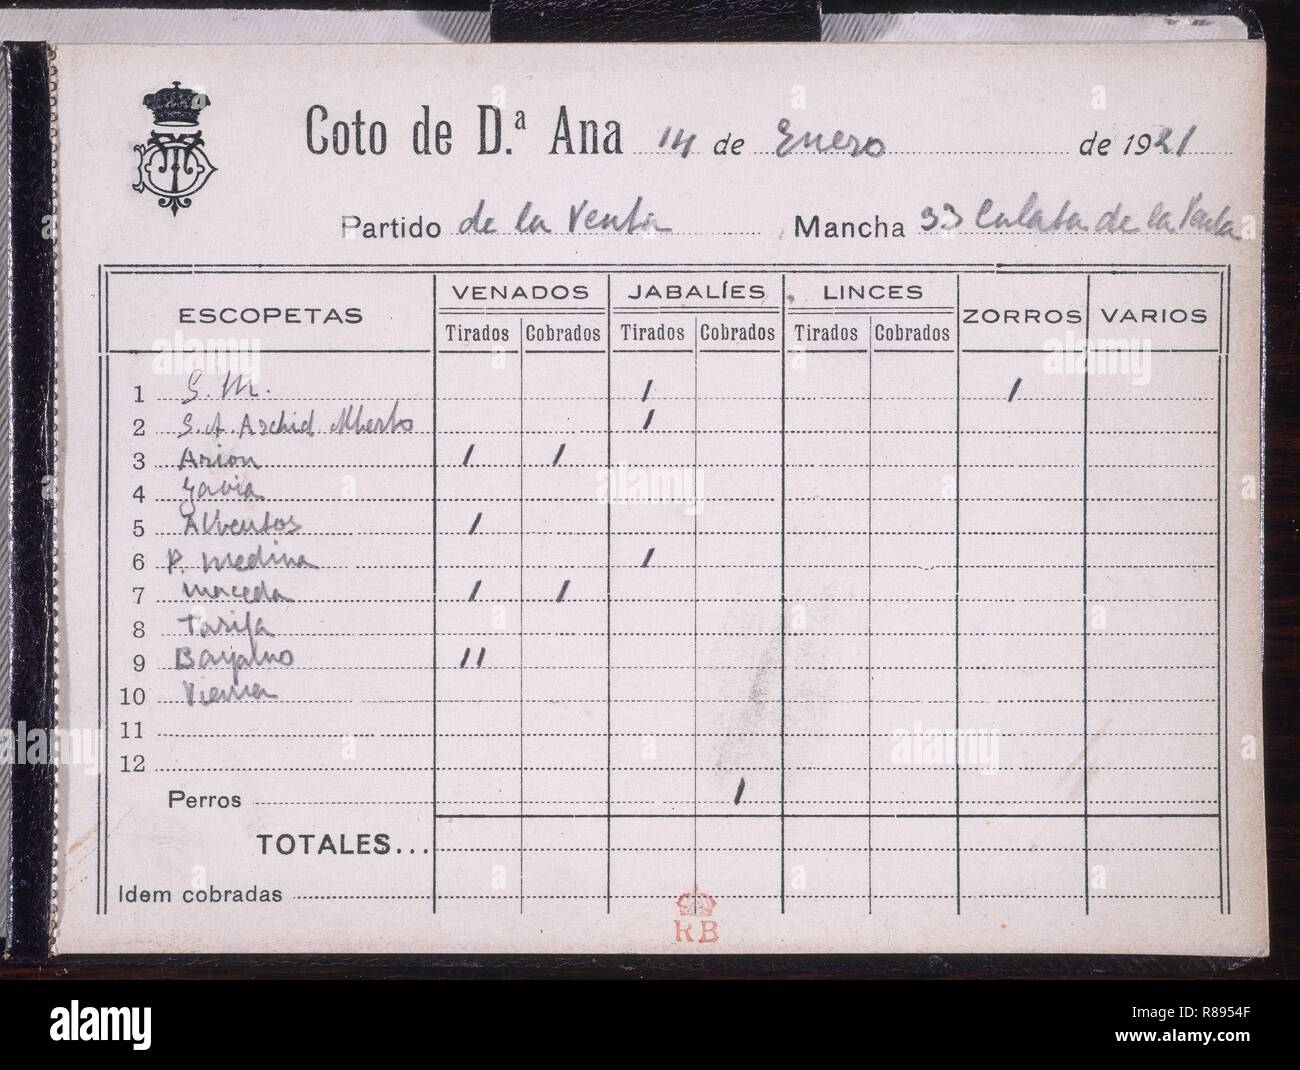 COTO DÑA ANA-14/1/1921-PARTIDO DE LA VENTA-RELACION DE PIEZAS CAZADAS POR LOS PARTICIPANTES. Location: PALACIO REAL-BIBLIOTECA. MADRID. SPAIN. Stock Photo